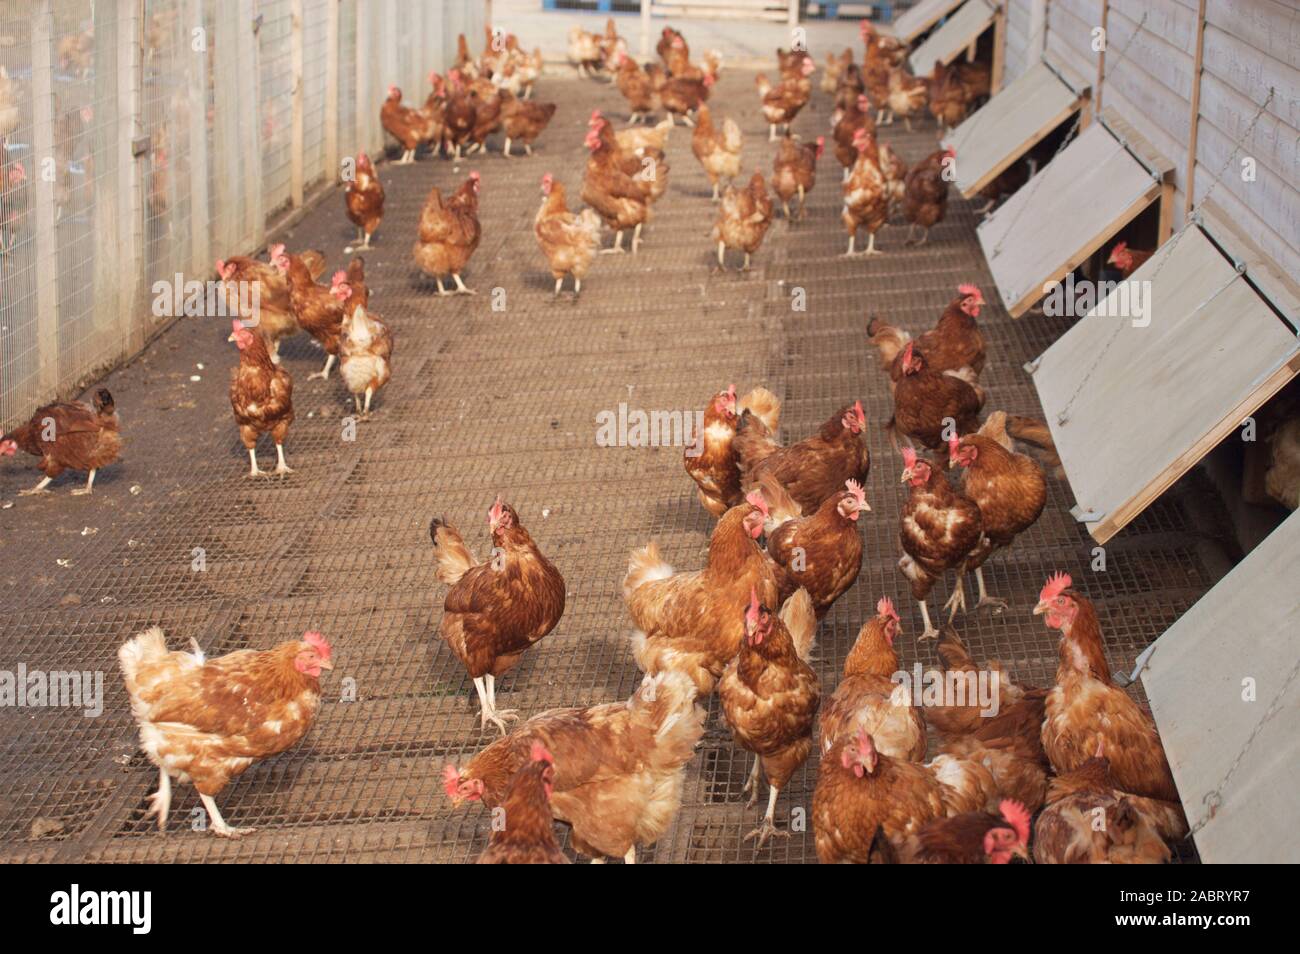 Kolumbianische BAR-TAILED freie Hühner heimische Vielfalt der Eiablage Geflügel. Hühner hier auf Draht Etagen die Füße trocken, haben die Option auf 'freie' Stockfoto